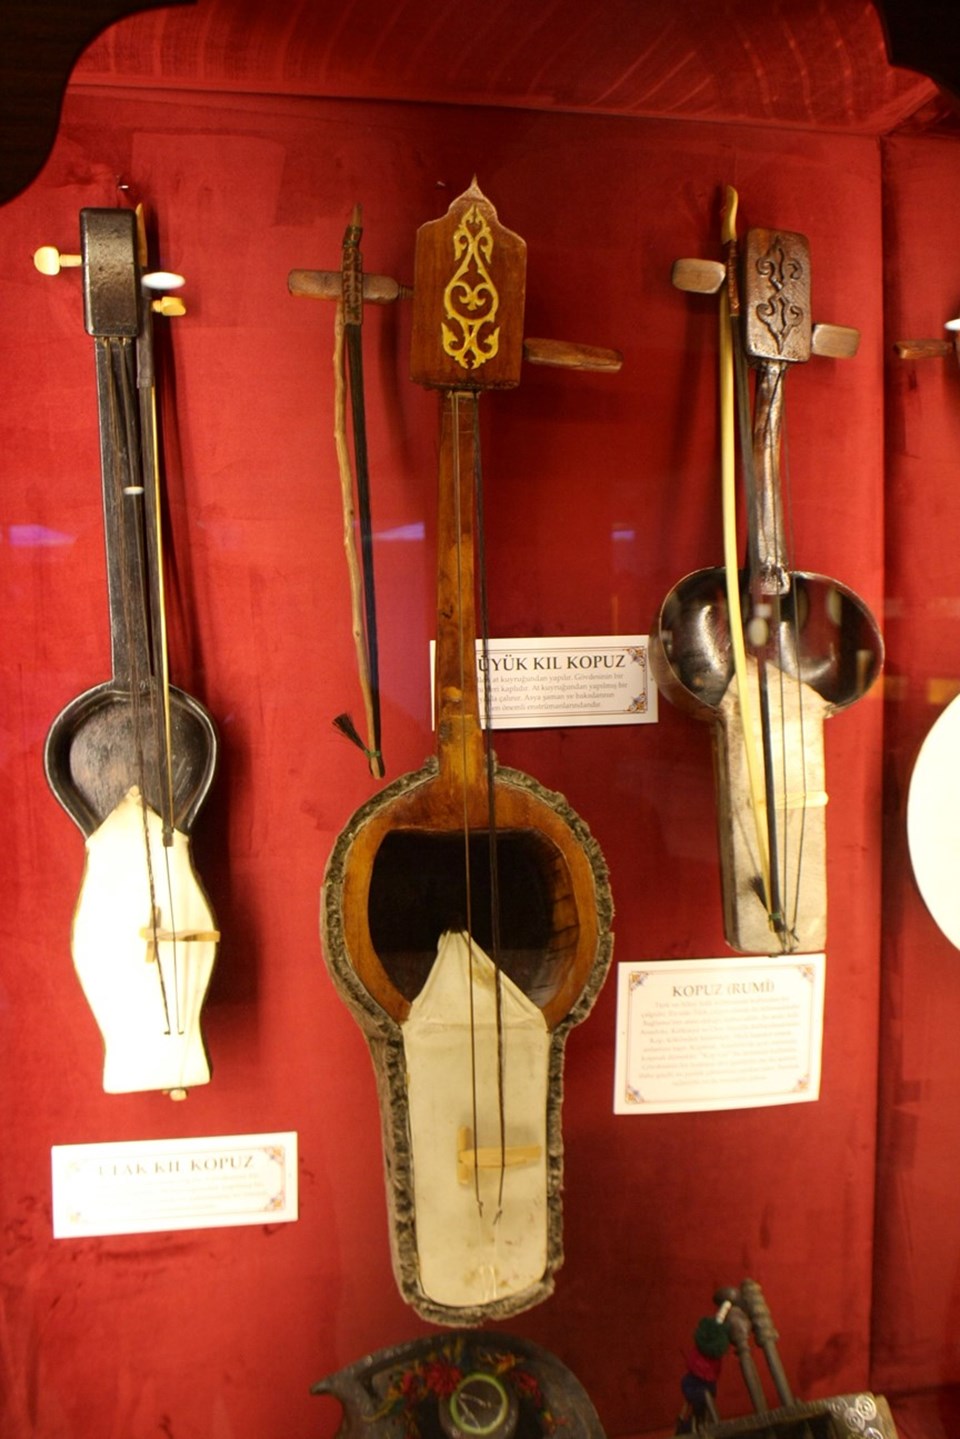 216 enstrüman bu müzede sergileniyor (Müzik Tarihi Salonu) - 1